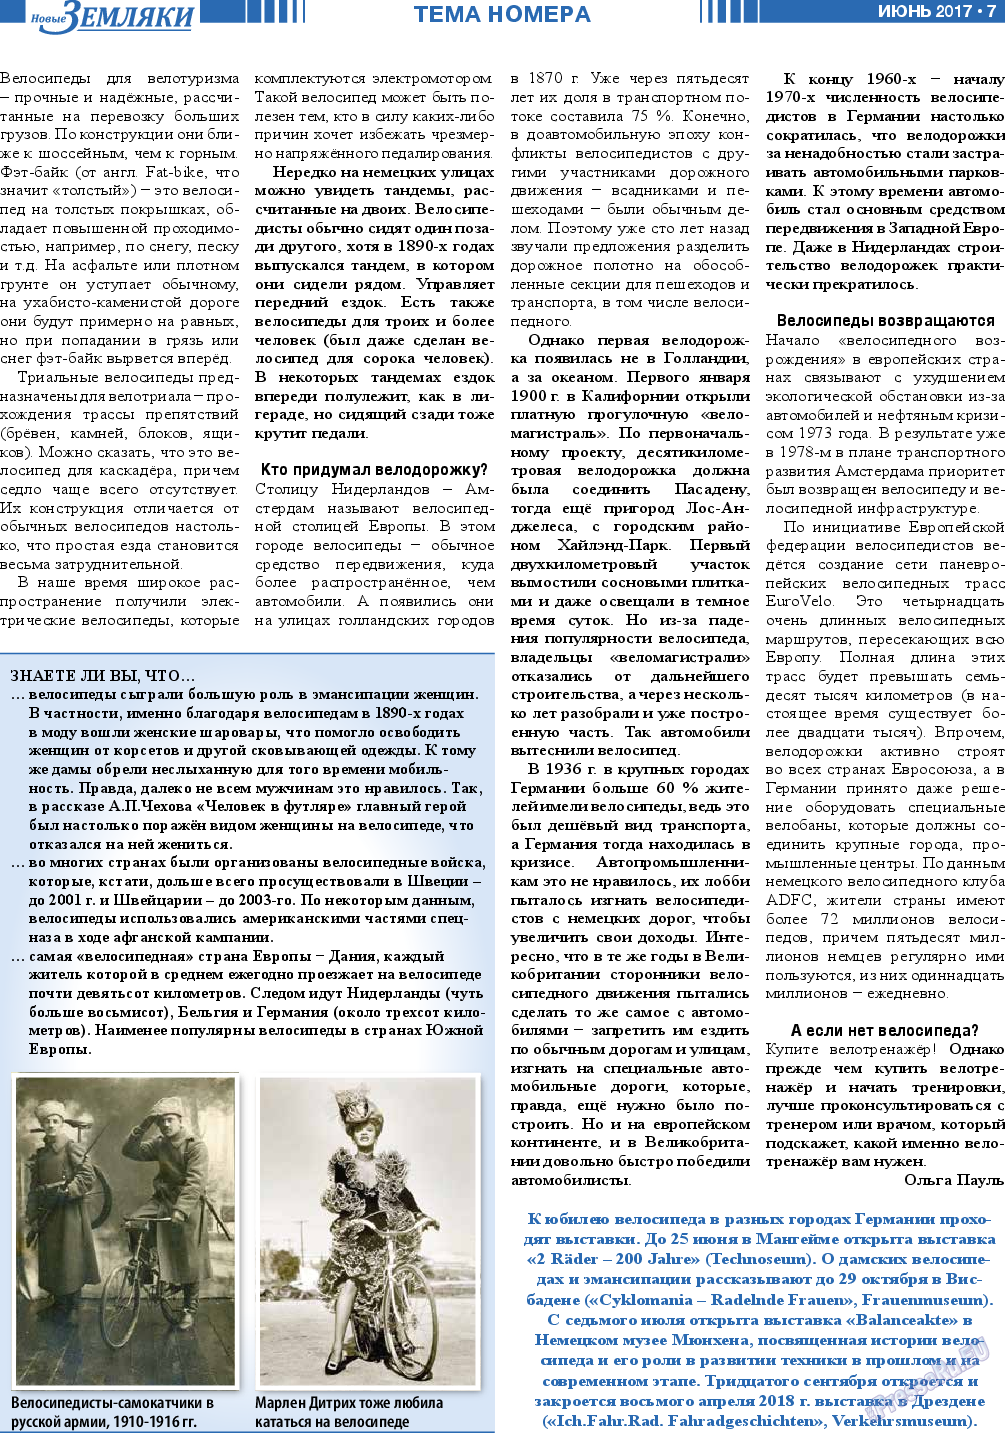 Новые Земляки, газета. 2017 №6 стр.7